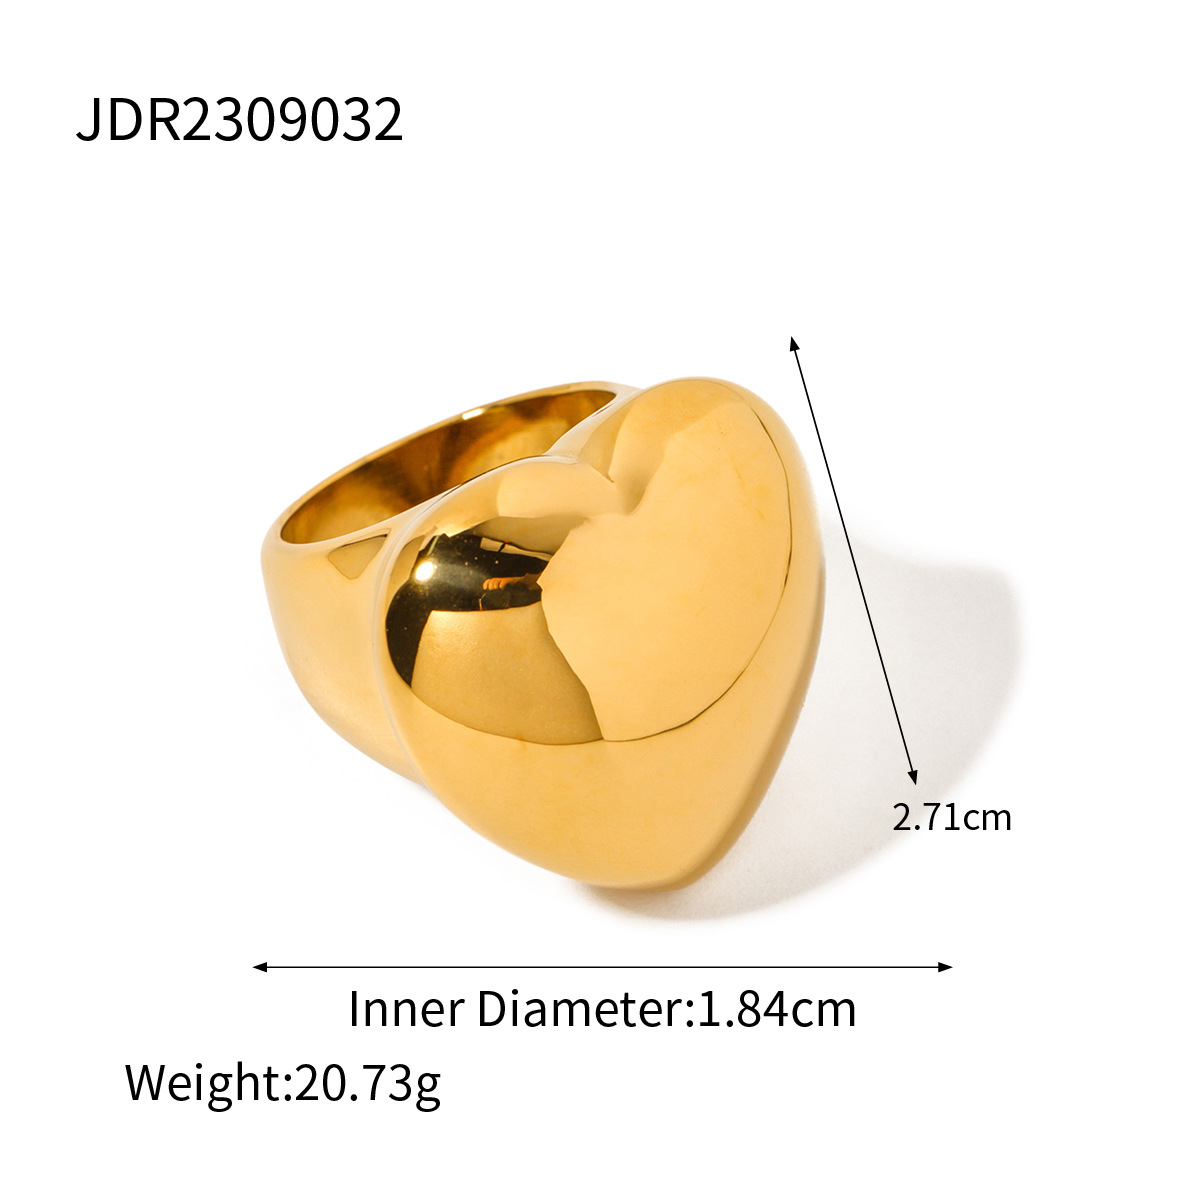 JDR2309032 US Size #6